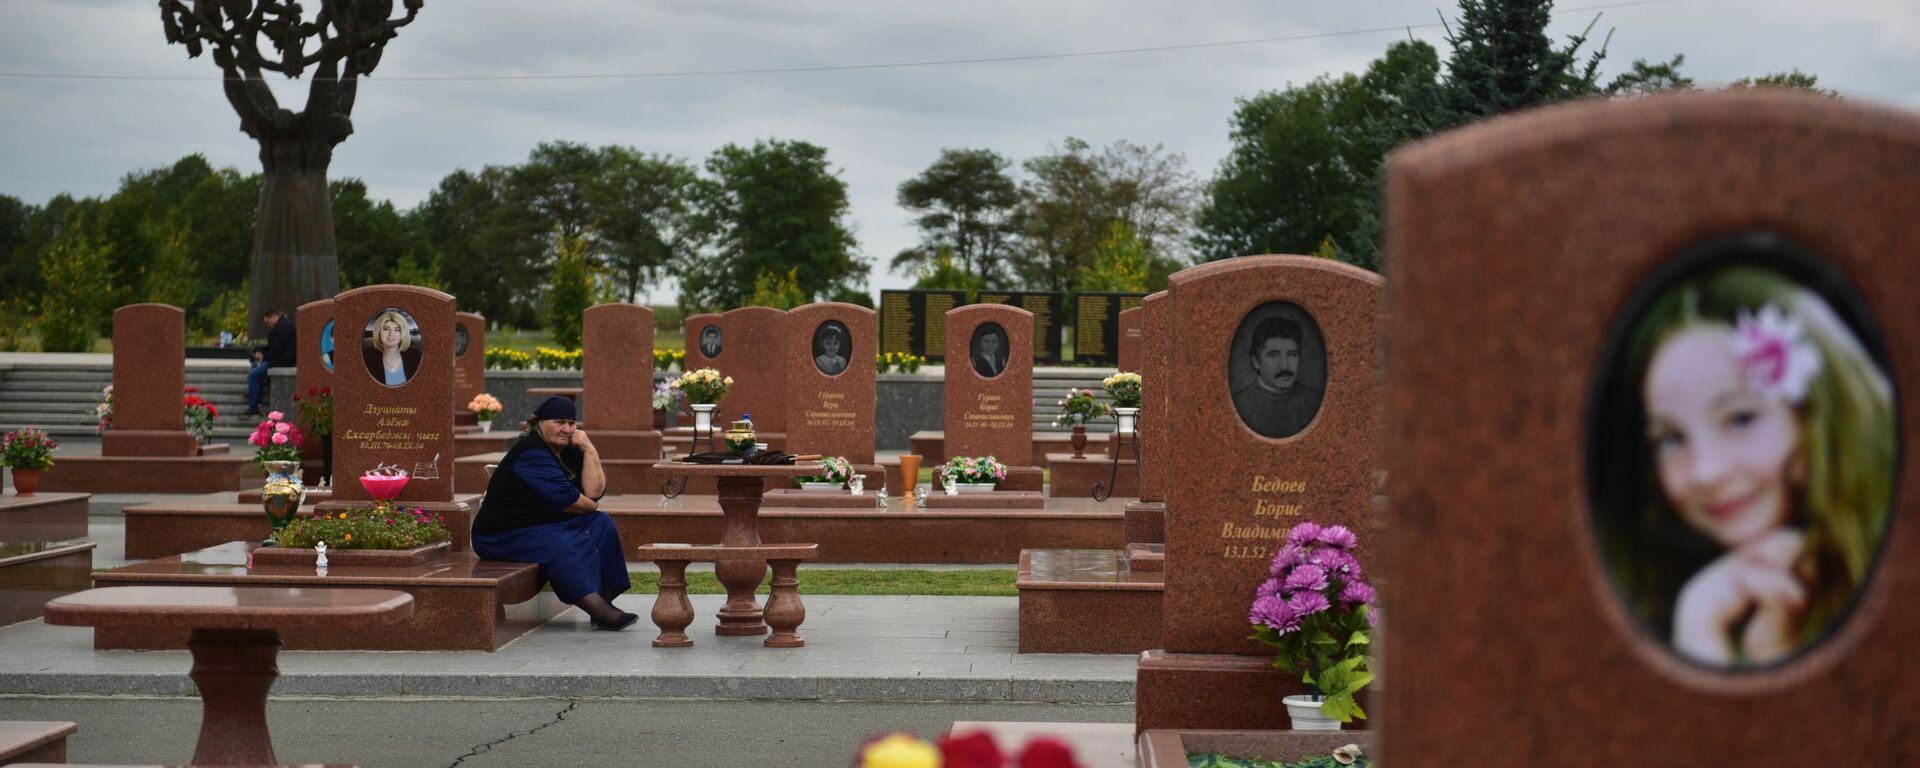 Жена плаче на гробљу Град анђела у Беслану где су сахрањени погинули у терористичком нападу 1. септембра 2004. године. - Sputnik Србија, 1920, 03.09.2020